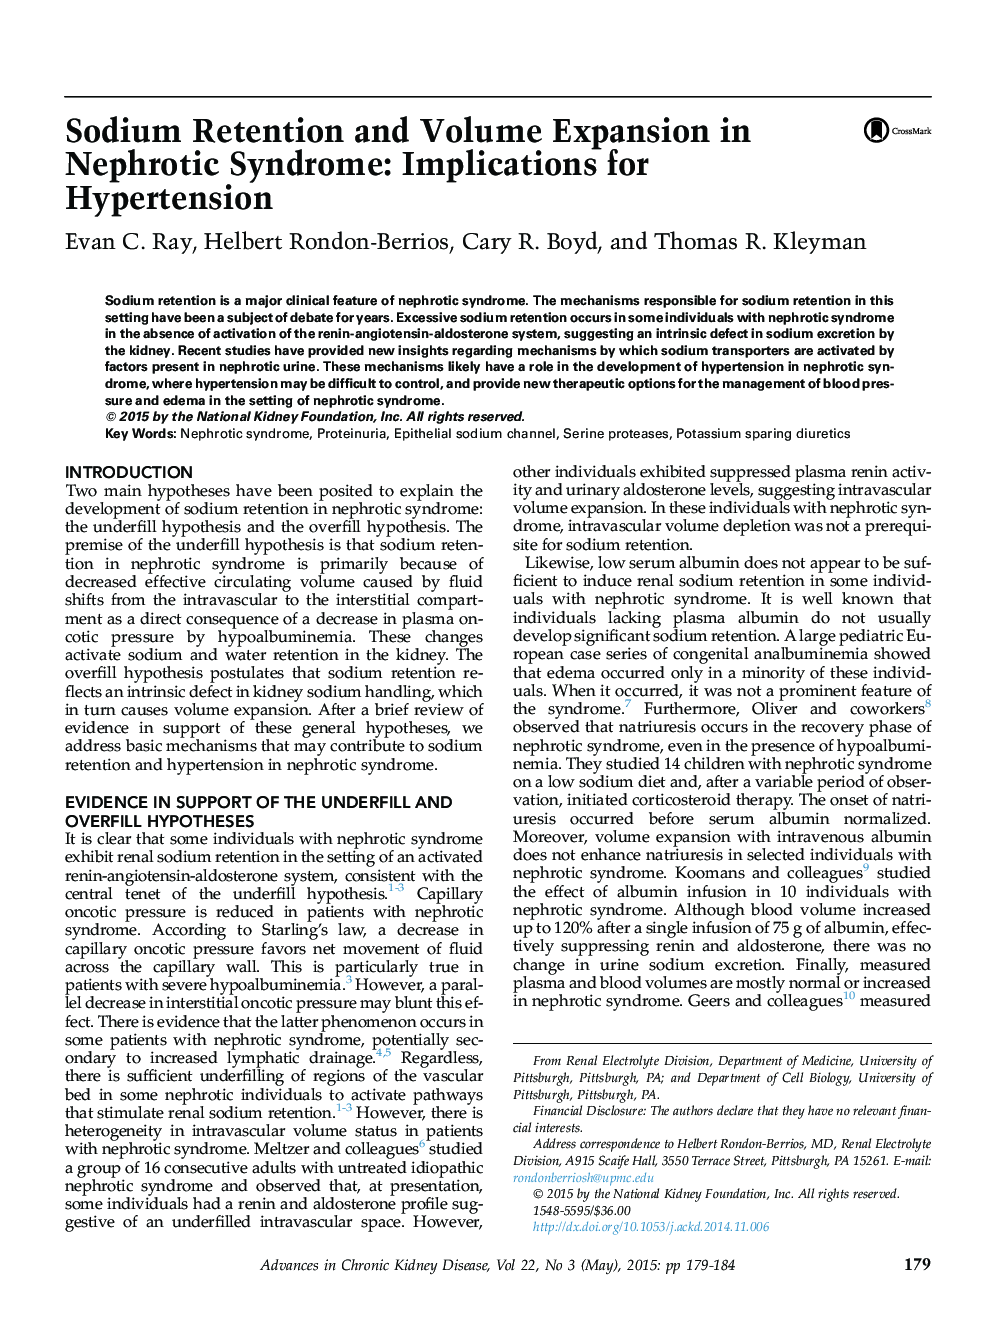 ردگیری سدیم و افزایش حجم در سندرم نفروتیک: پیامدهای فشار خون بالا 